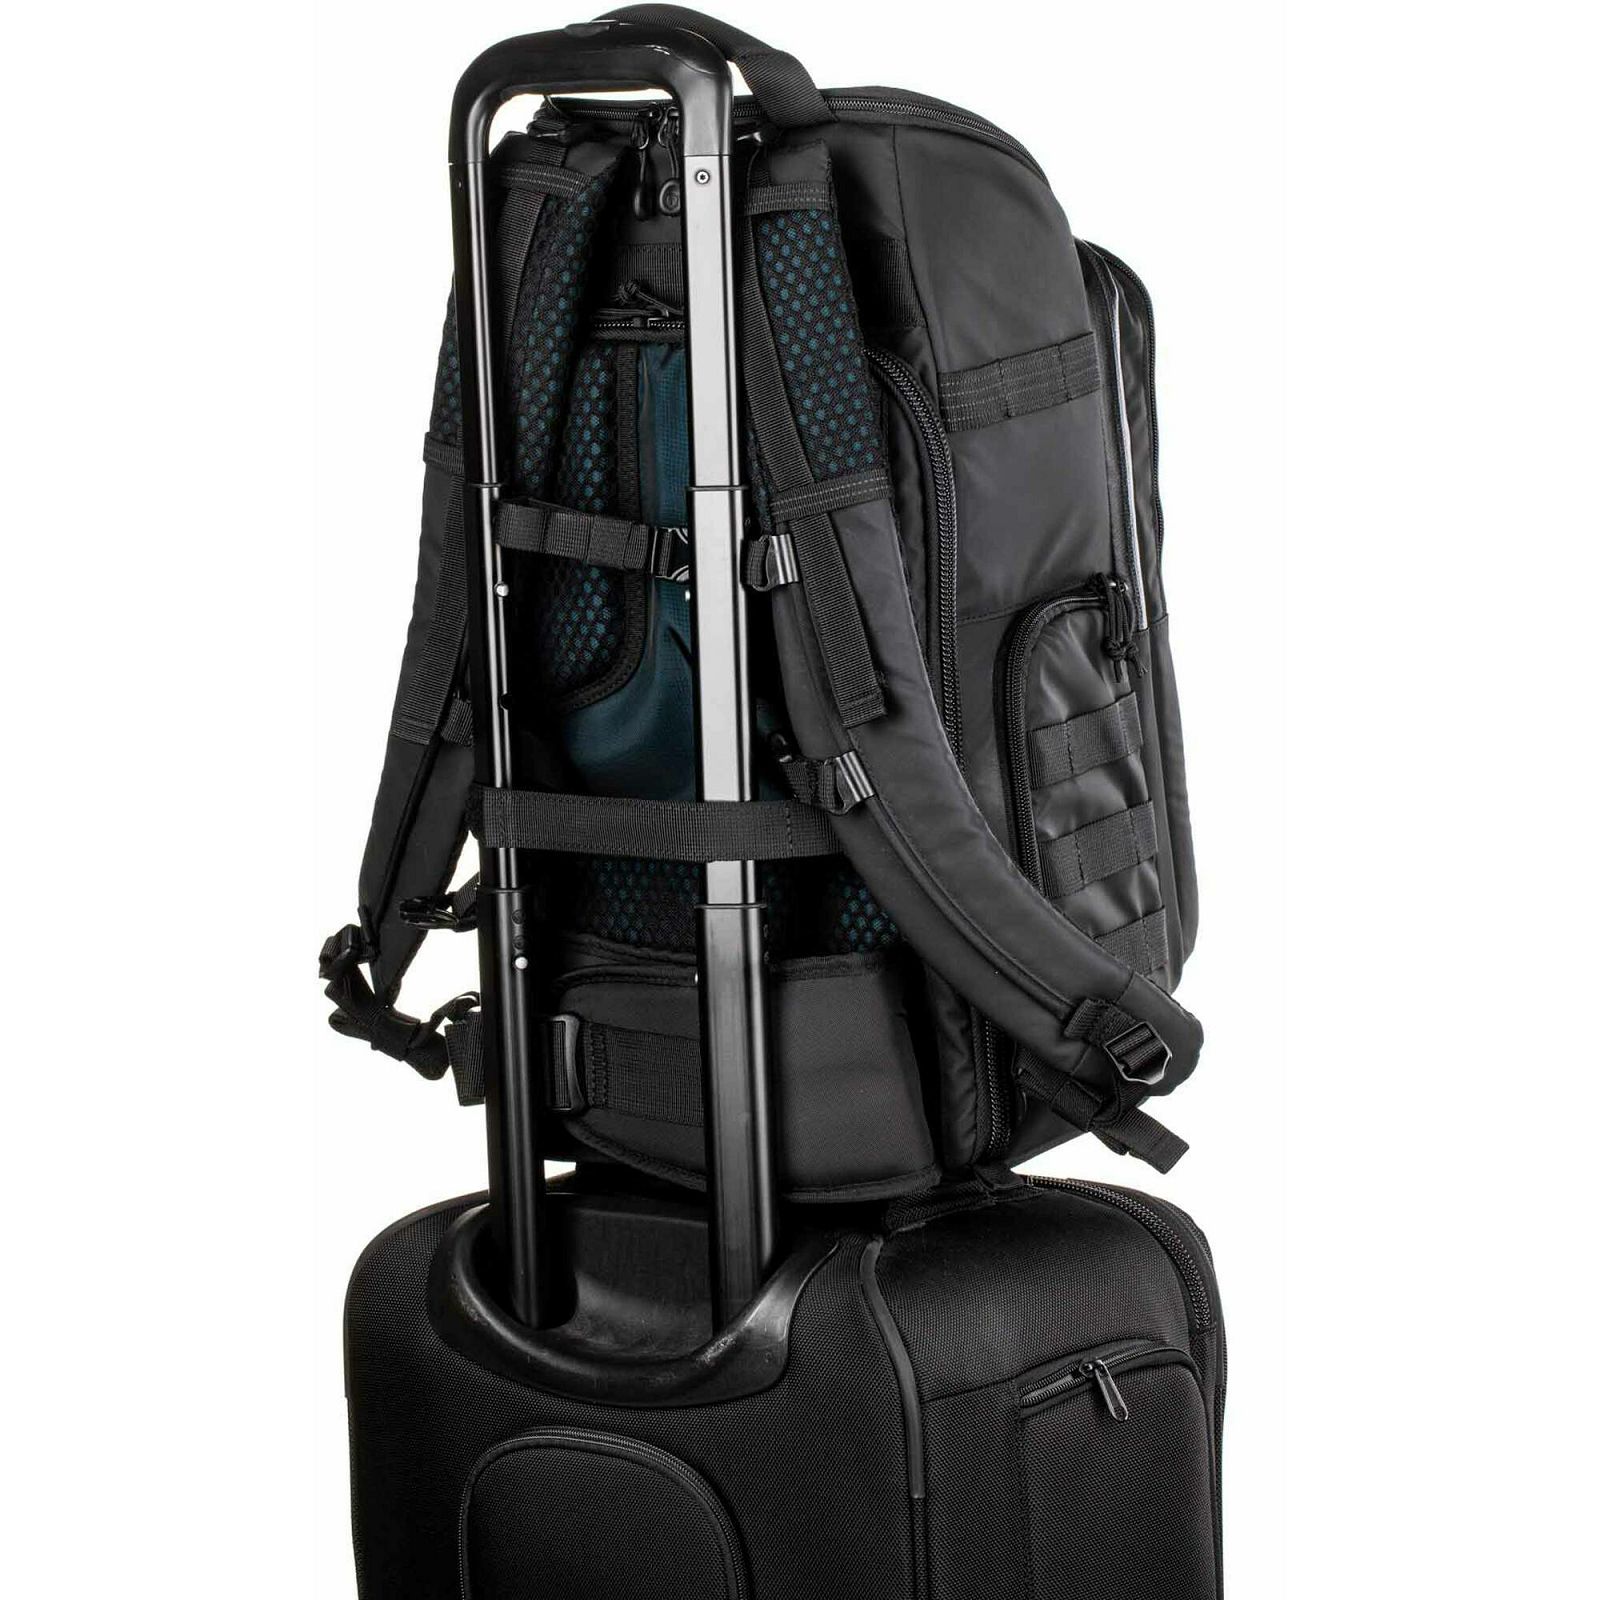 Tenba Axis v2 20L Backpack MultiCam Black